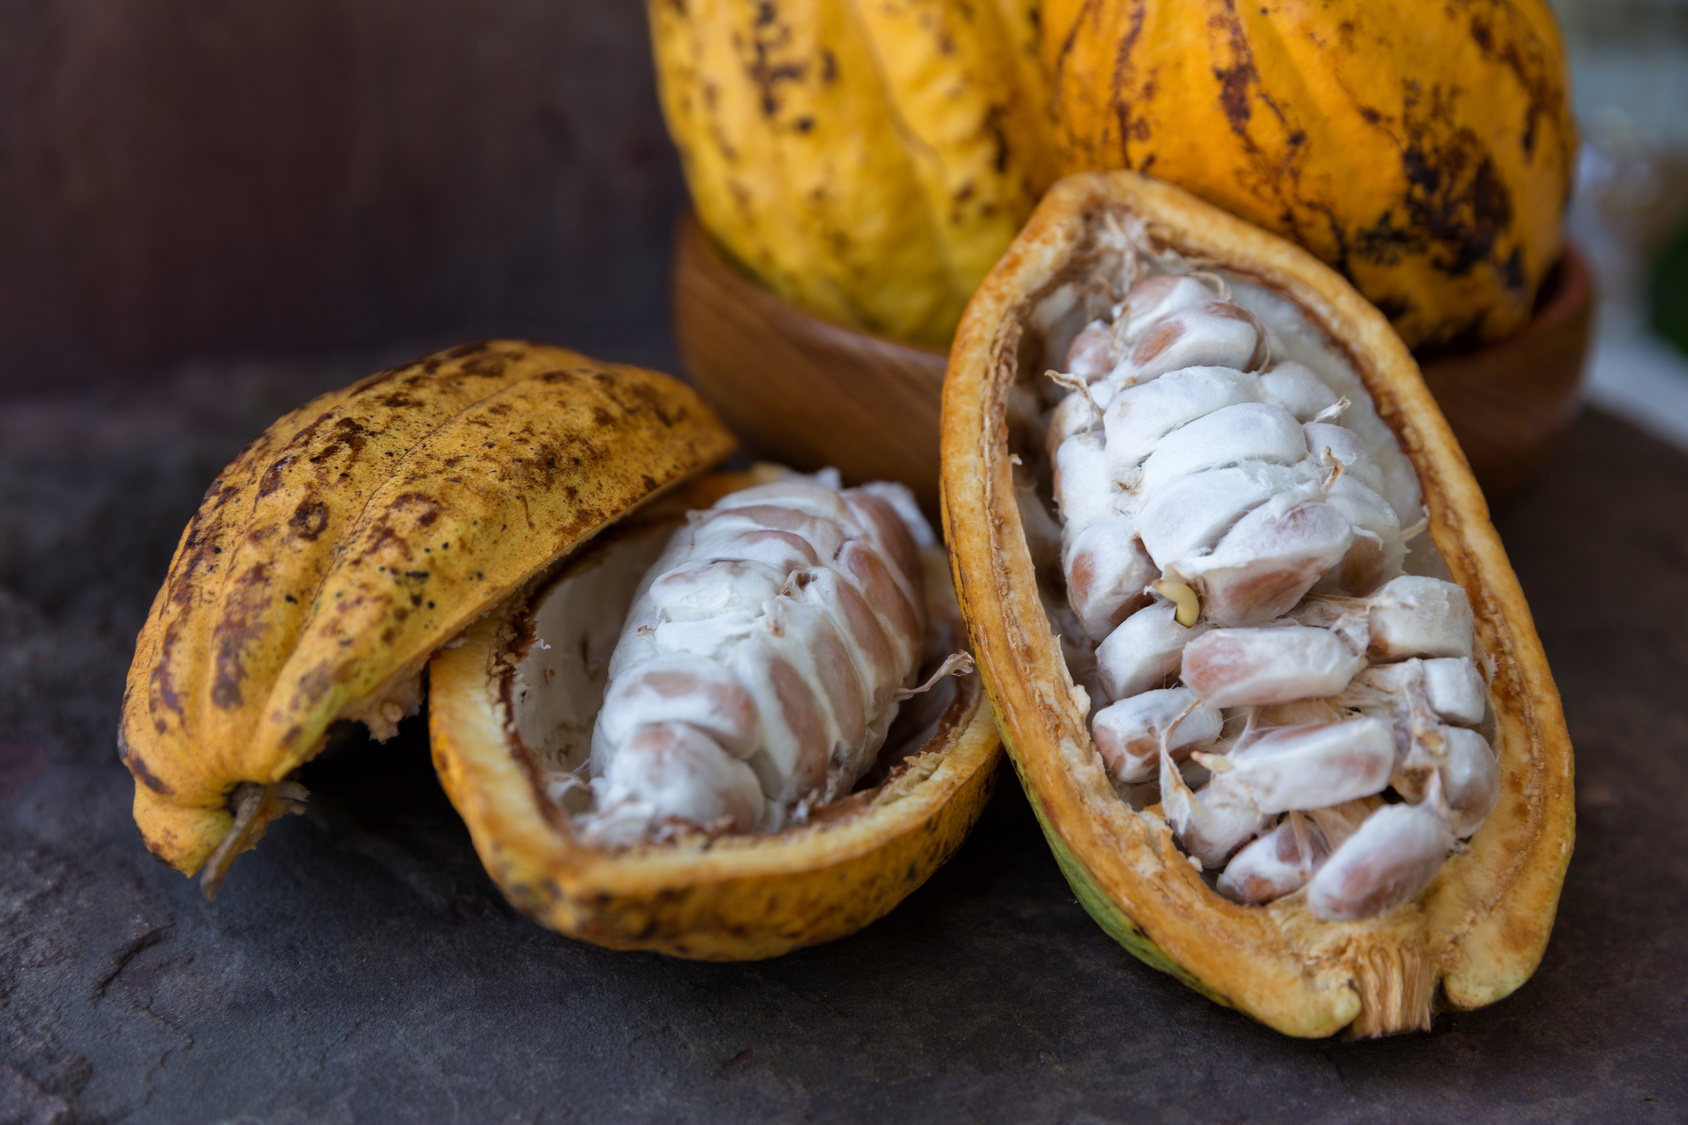 Des chercheurs sont remontés jusqu’aux origines du cacao en analysant le génome du plus rare cacaoyer du monde. Leur étude pourrait permettre d’améliorer le rendement et donc de produire plus de cacao. © kamonrat, Fotolia